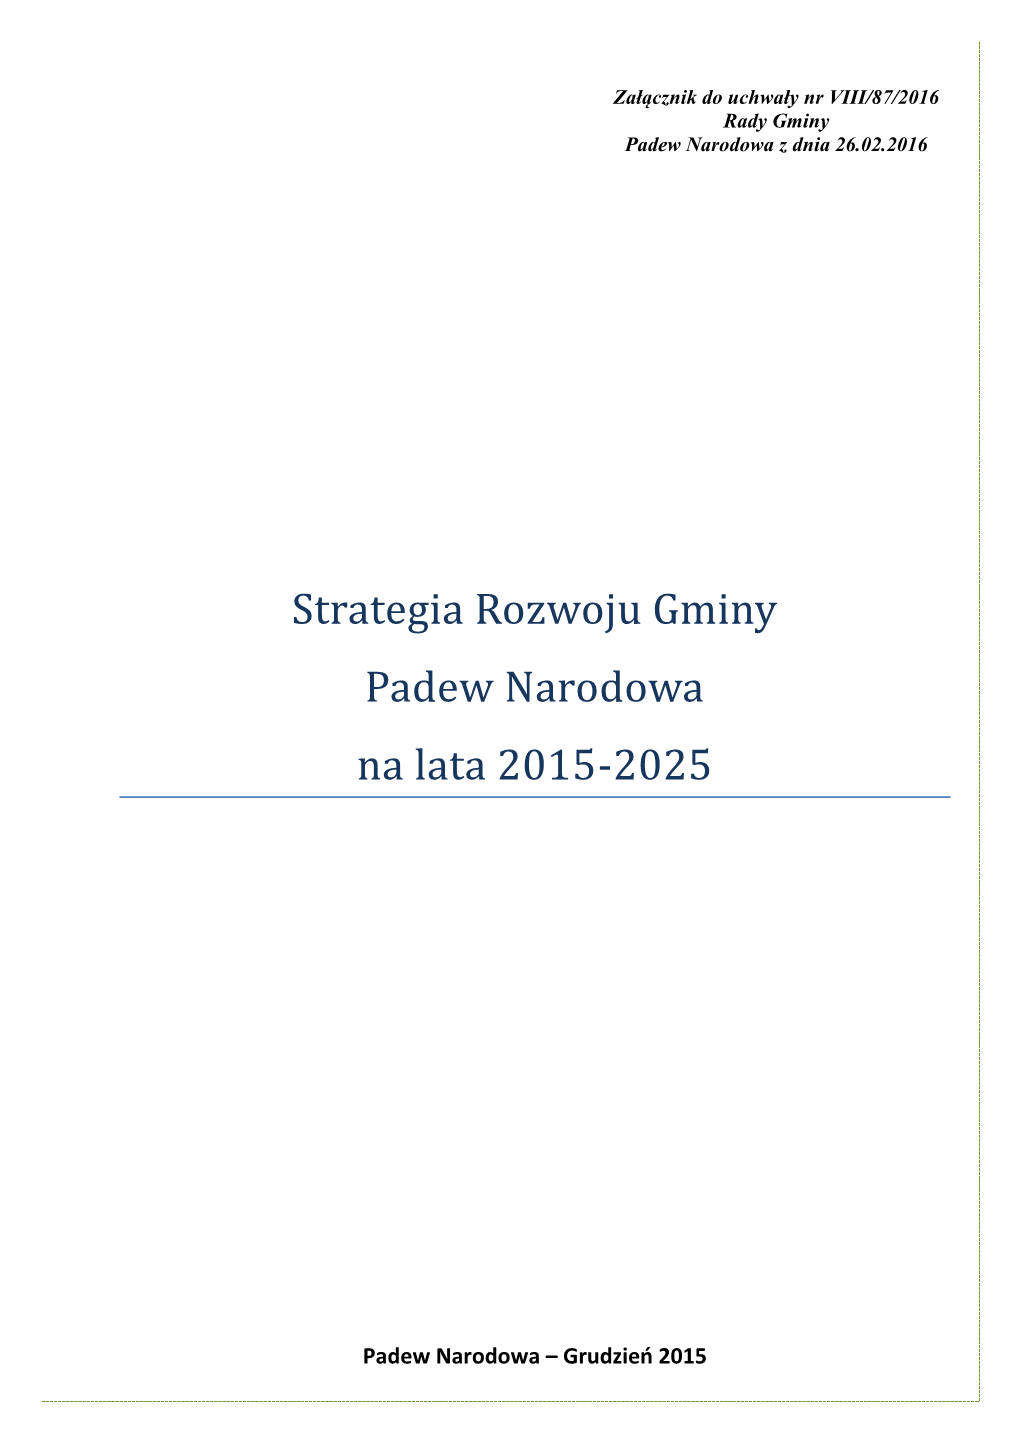 Strategia Rozwoju Gminy Padew Narodowa Na Lata 2015-2025